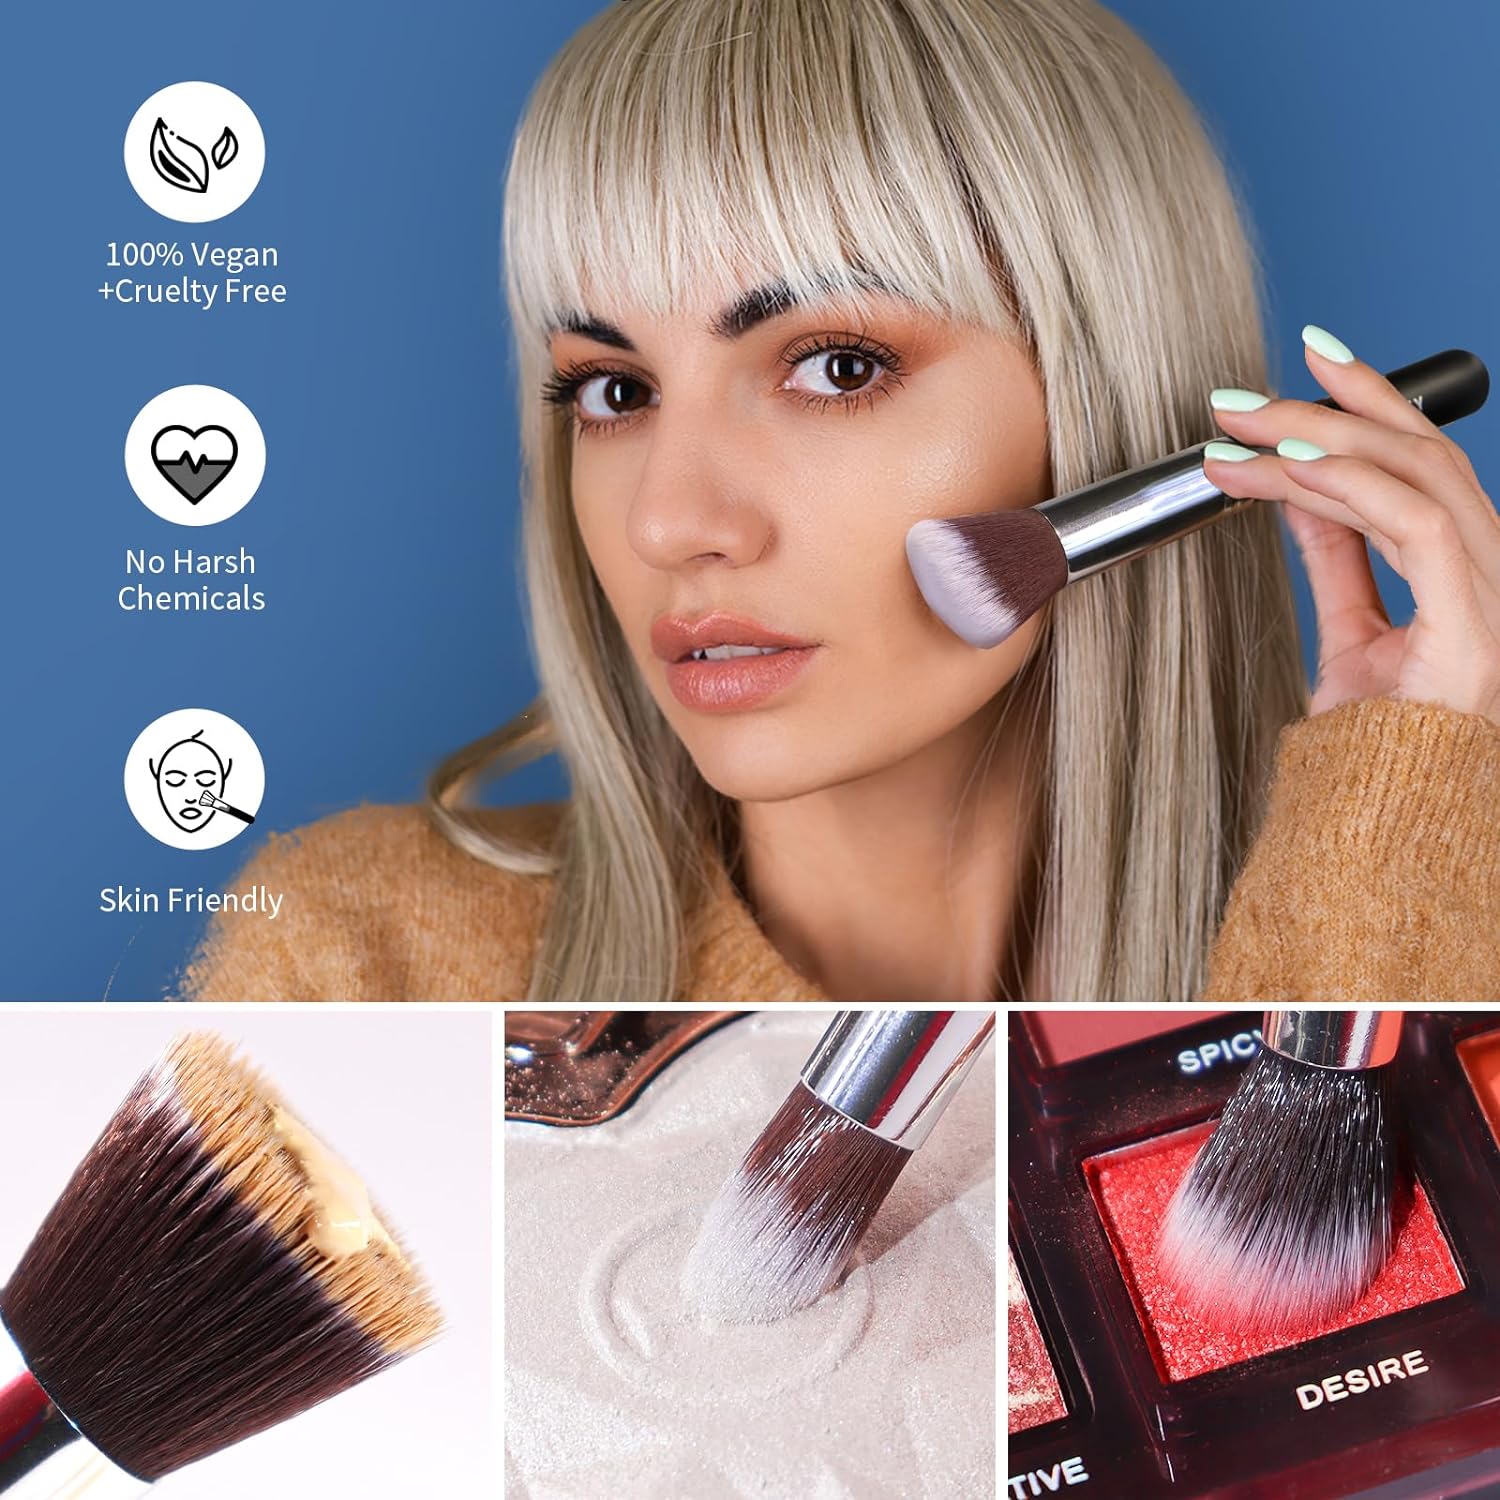 BEAKEY 12pcs Makeup Brushes with Black Brush Case - BEAKEY